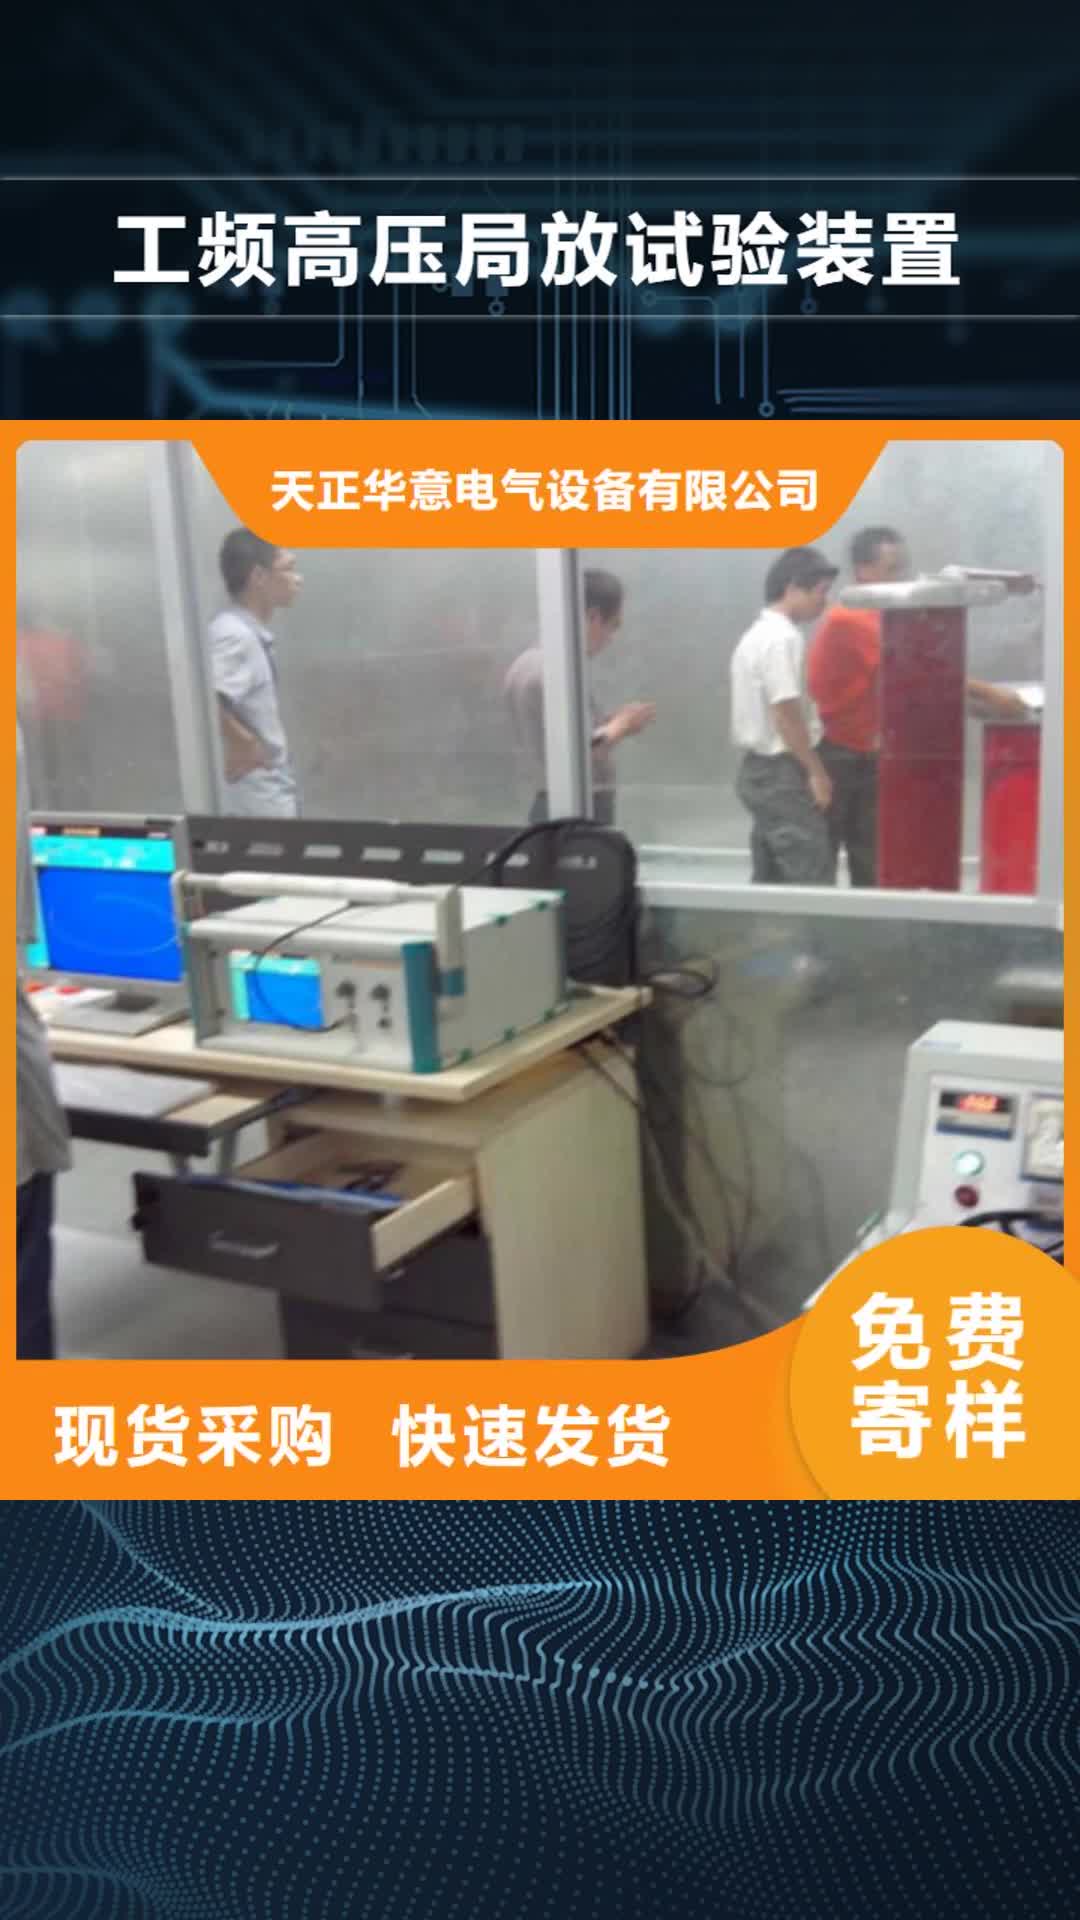 北京 工频高压局放试验装置,【蓄电池测试仪】多年行业积累